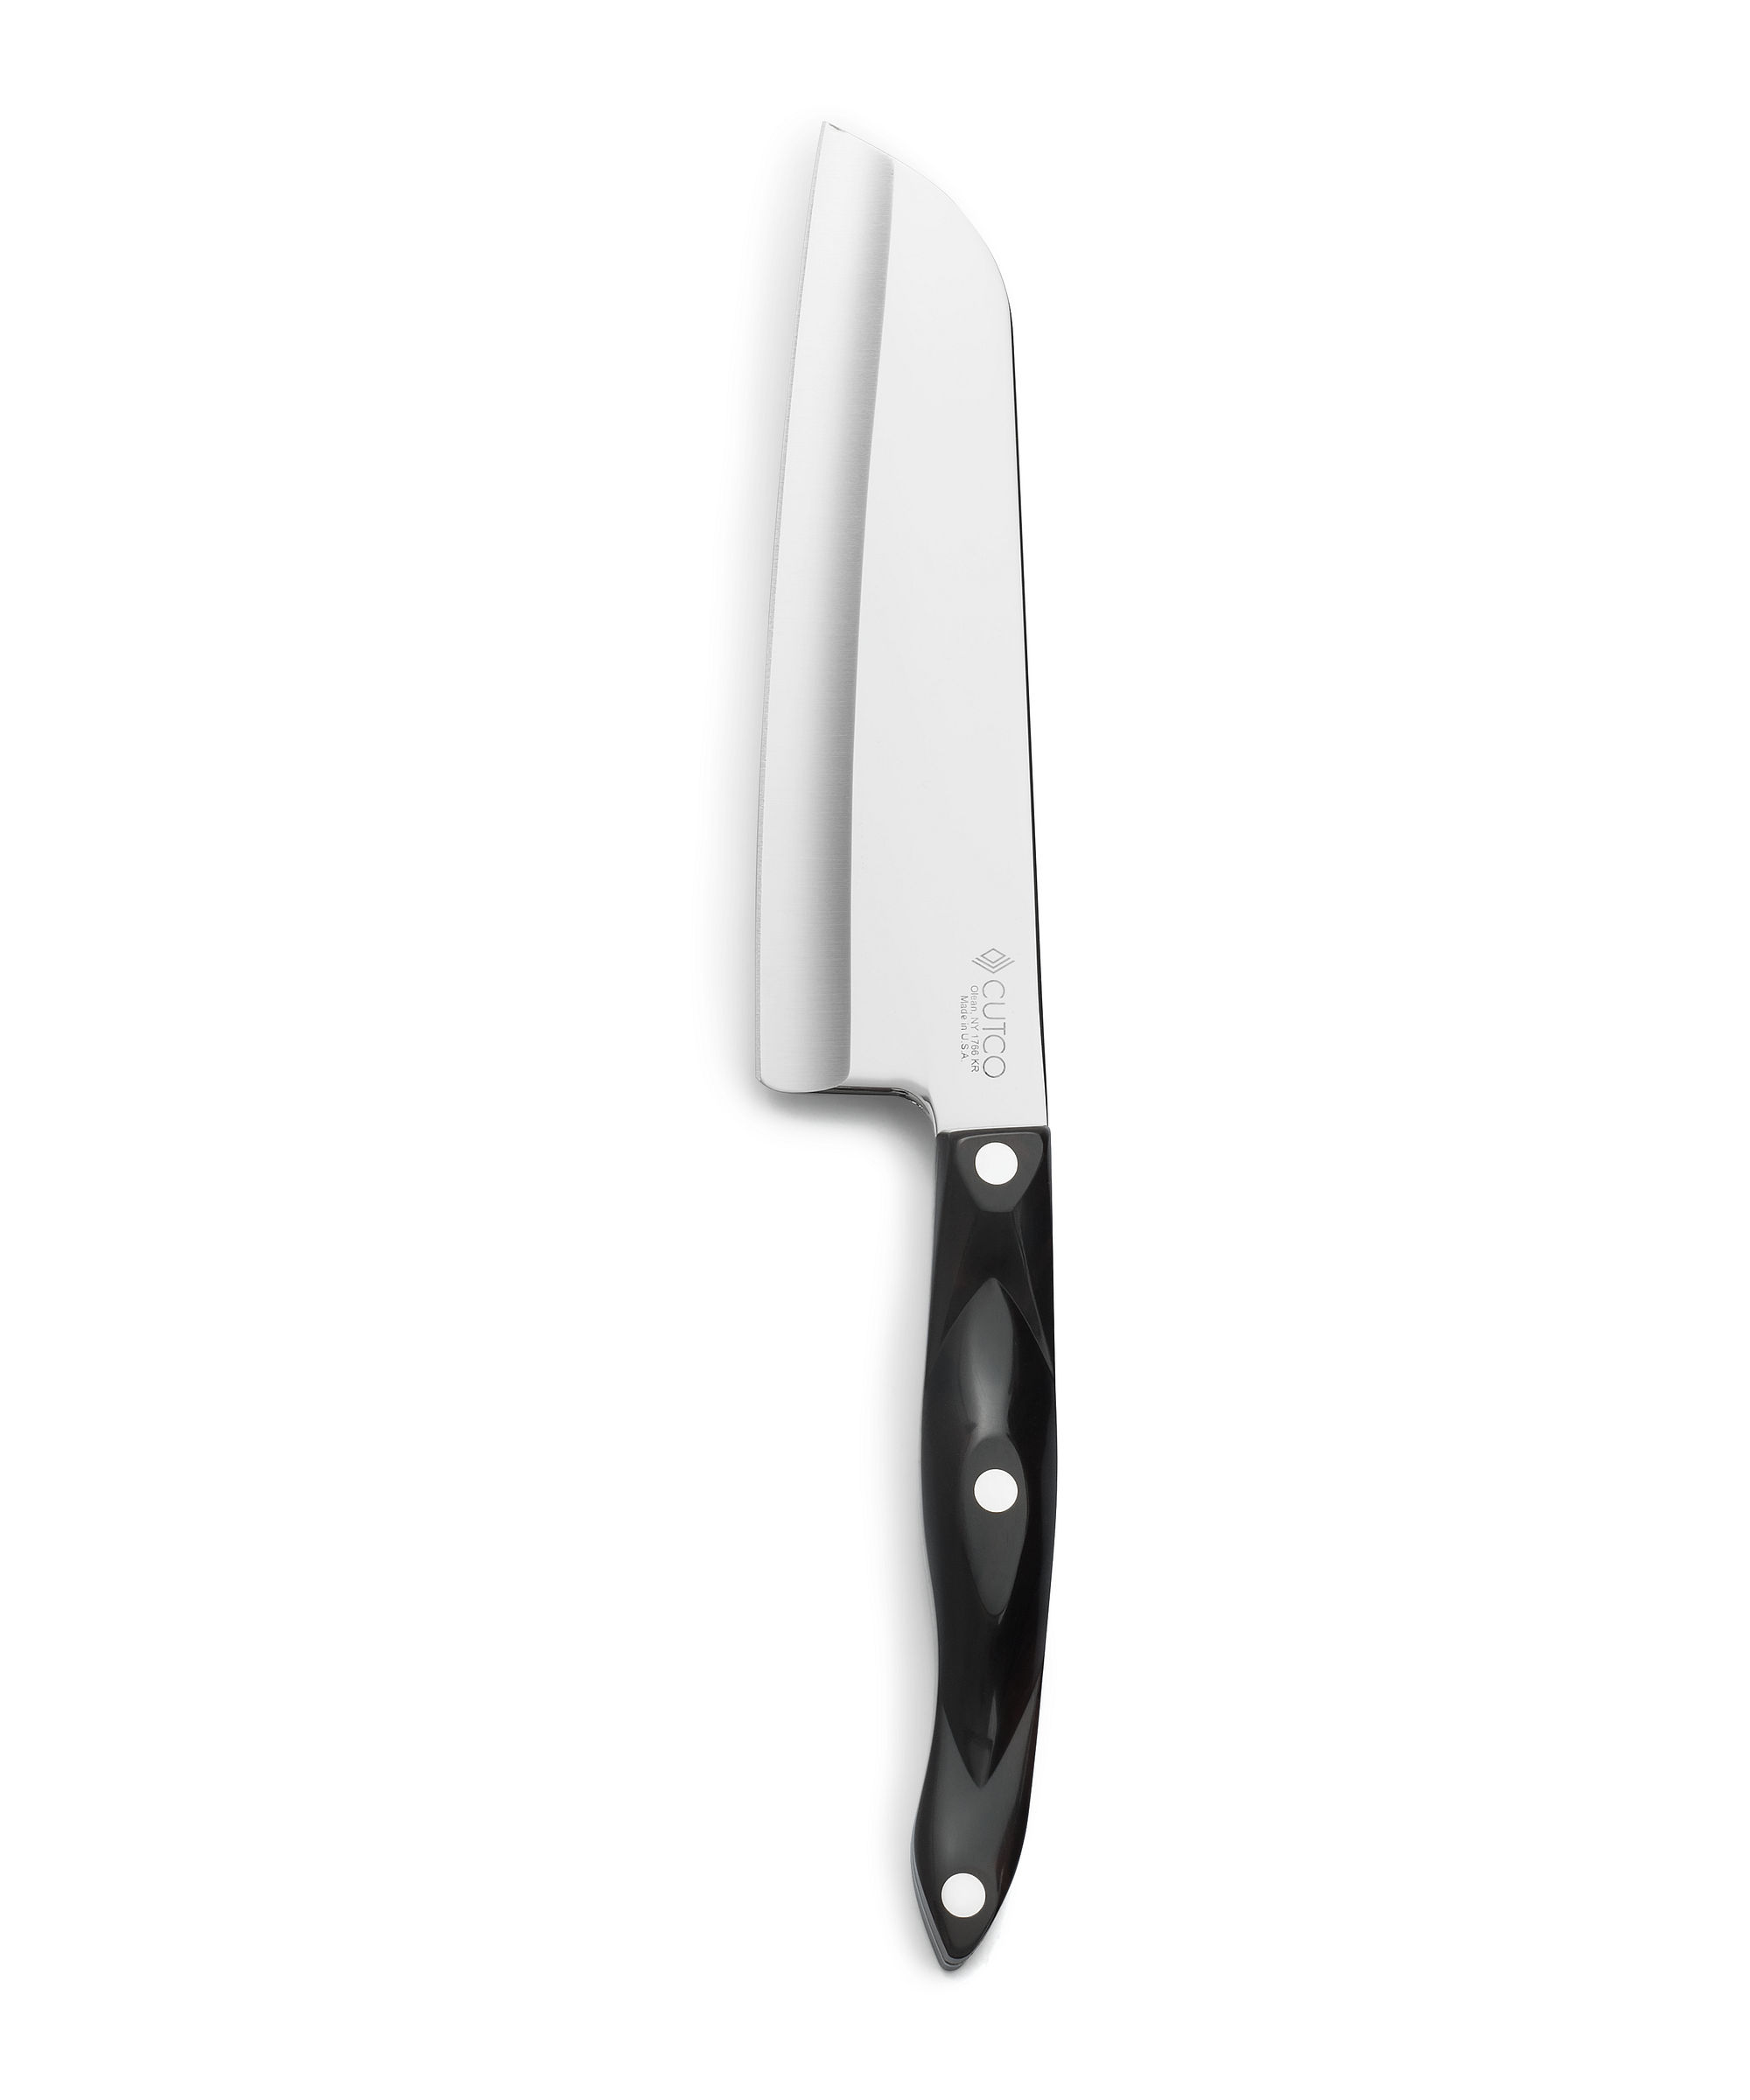 7 Santoku  Kitchen Knives by Cutco